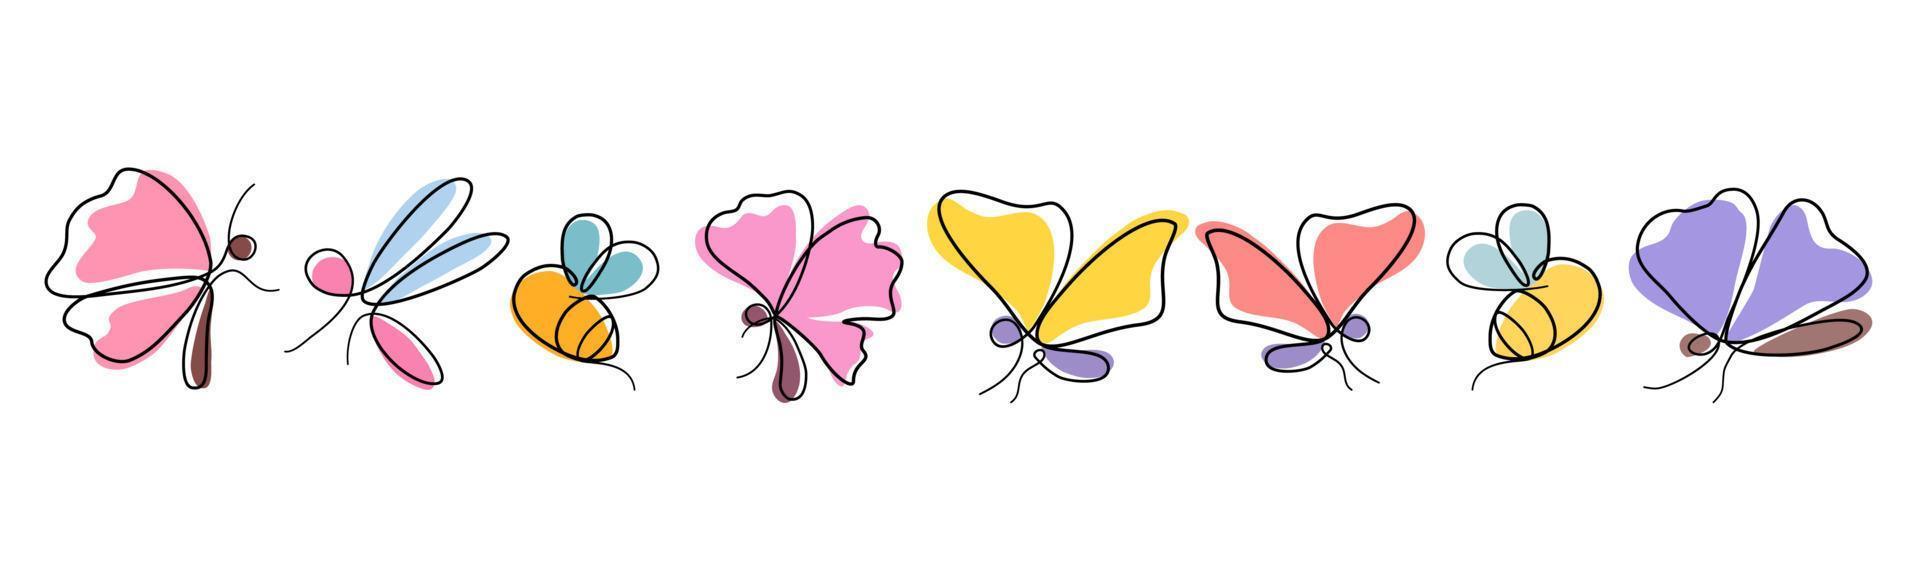 abstraktes Schmetterlings-, Libellen- und Bienenset im einfachen Doodle-Stil für Karten, Bekleidung, Stoffe, Papiermotive, Digitaldrucke. Frühlingsdeko, Kissen, Tassen, Taschen etc. vektor